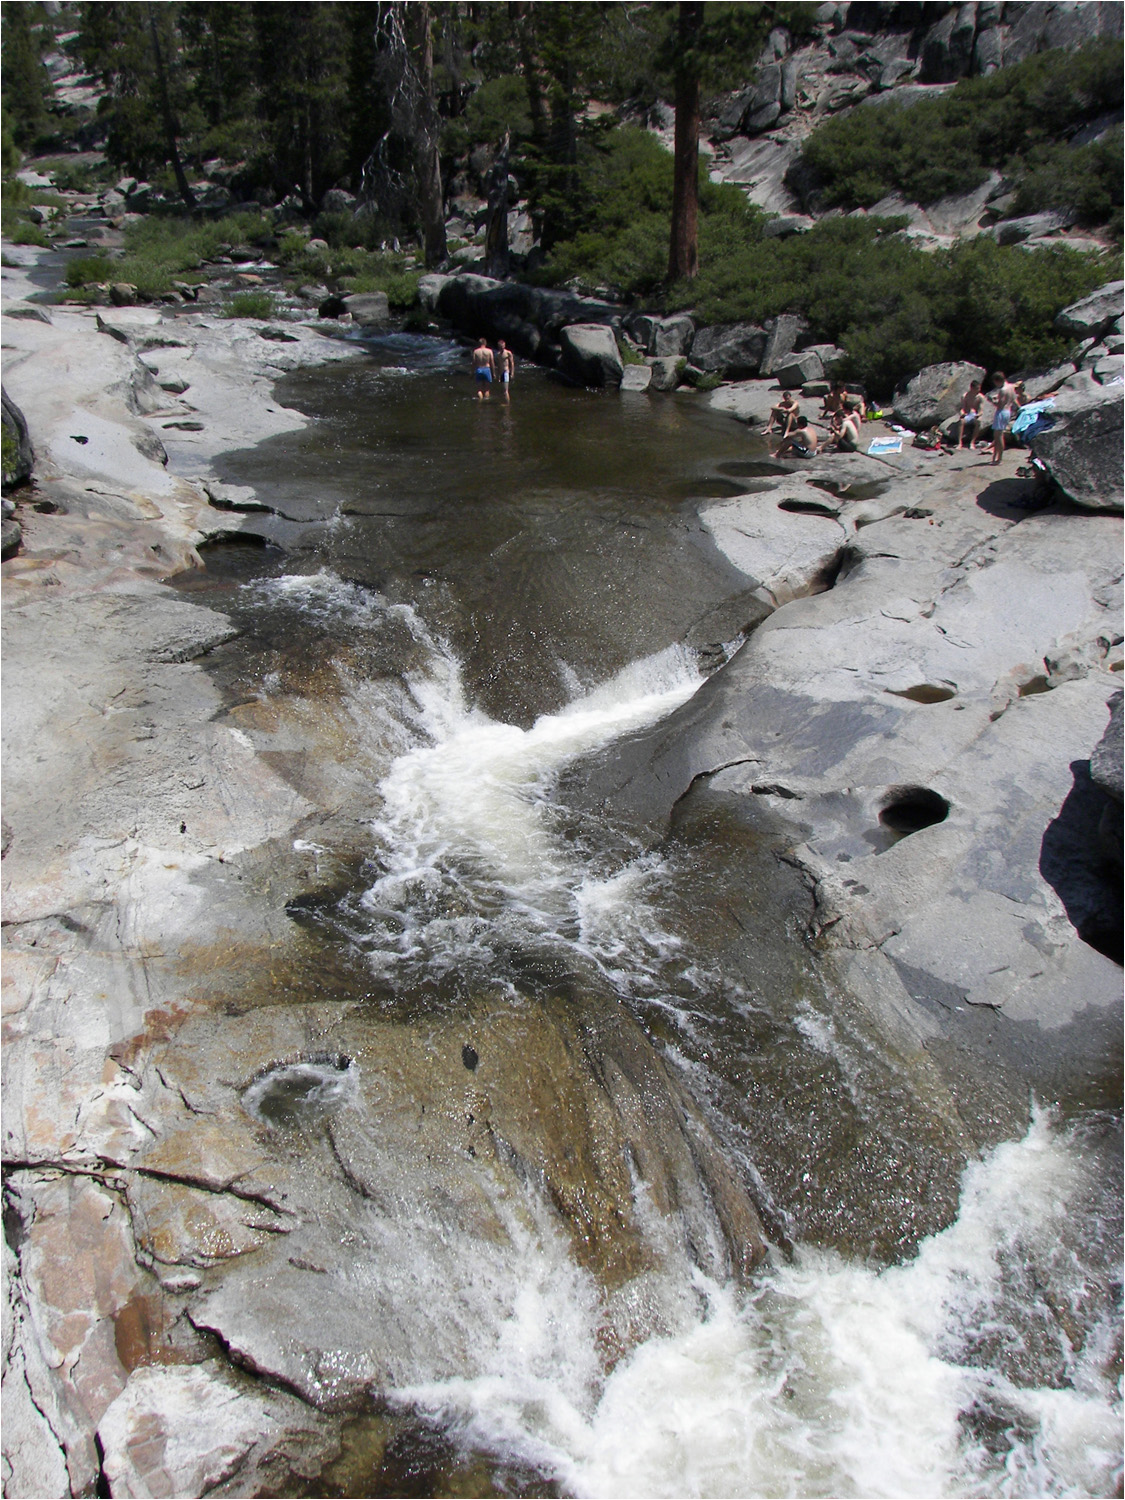 Upper Yosemite Falls Hike- Views of river upstream of falls